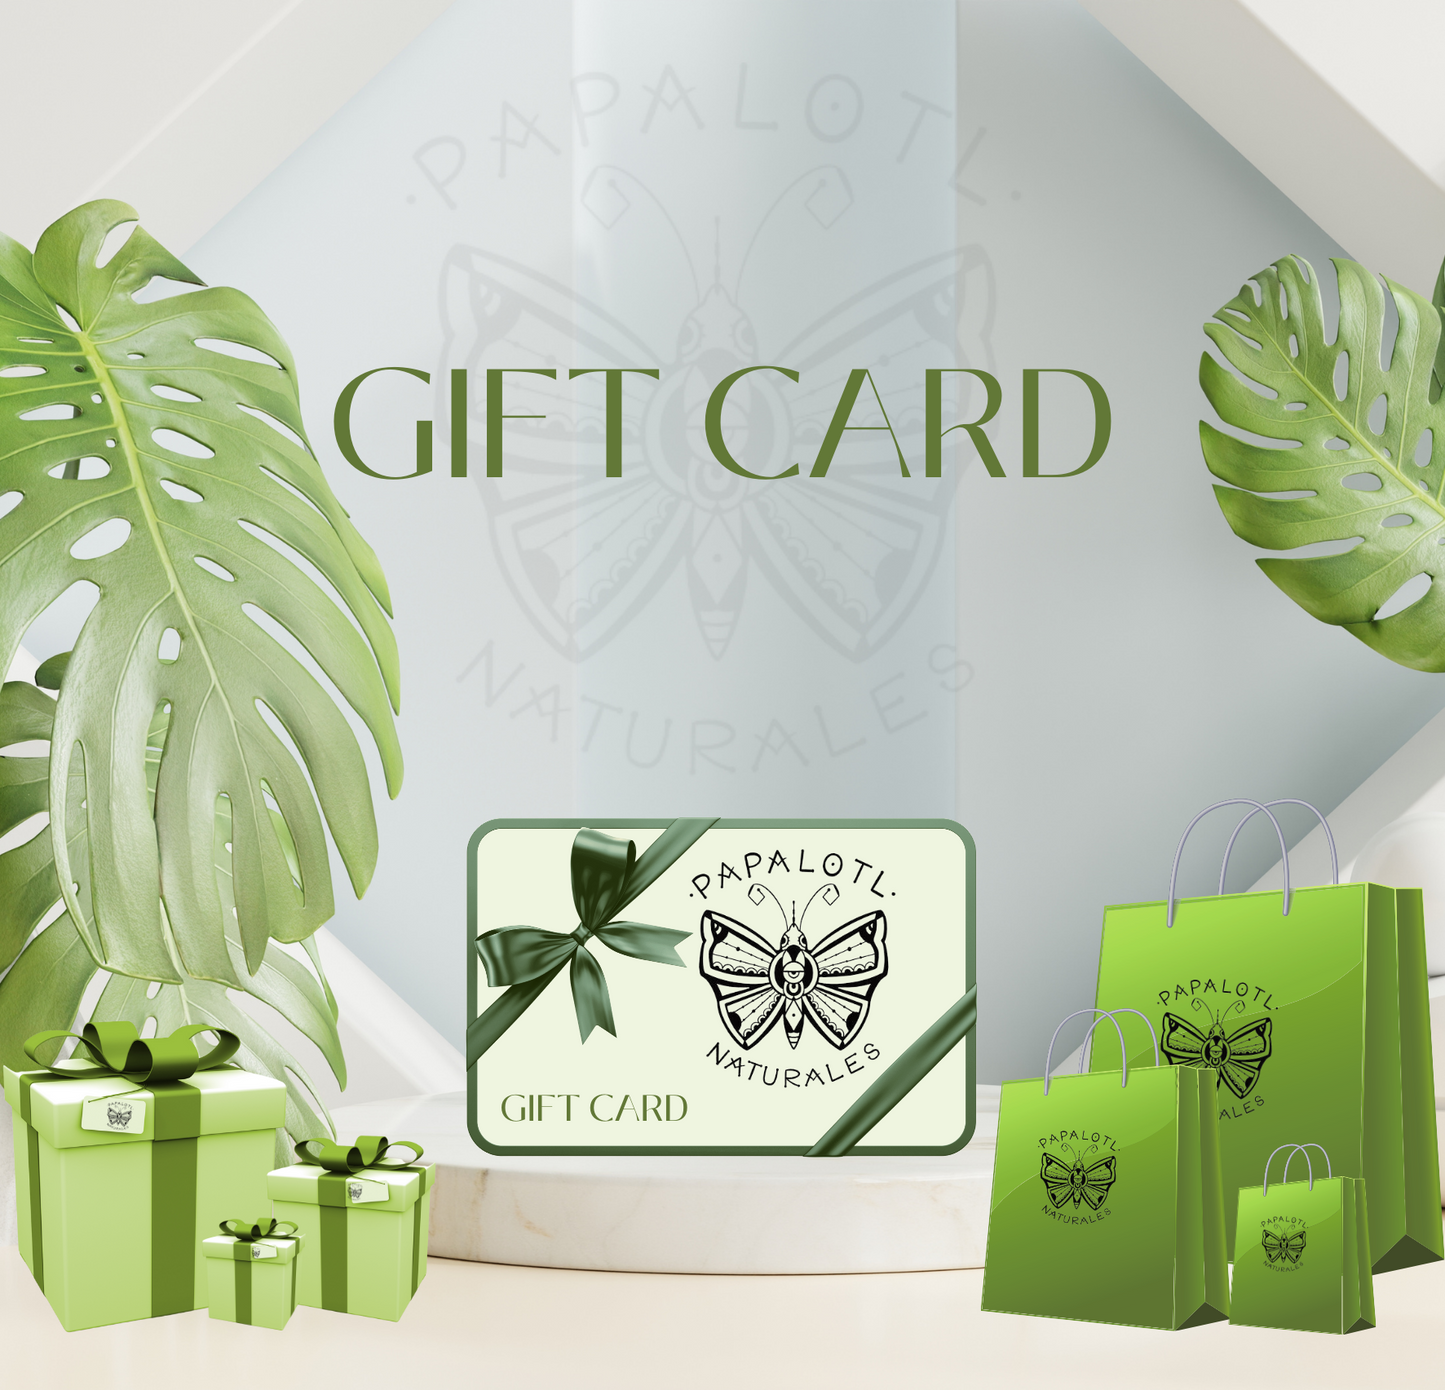 Papalotl Naturales Gift Card